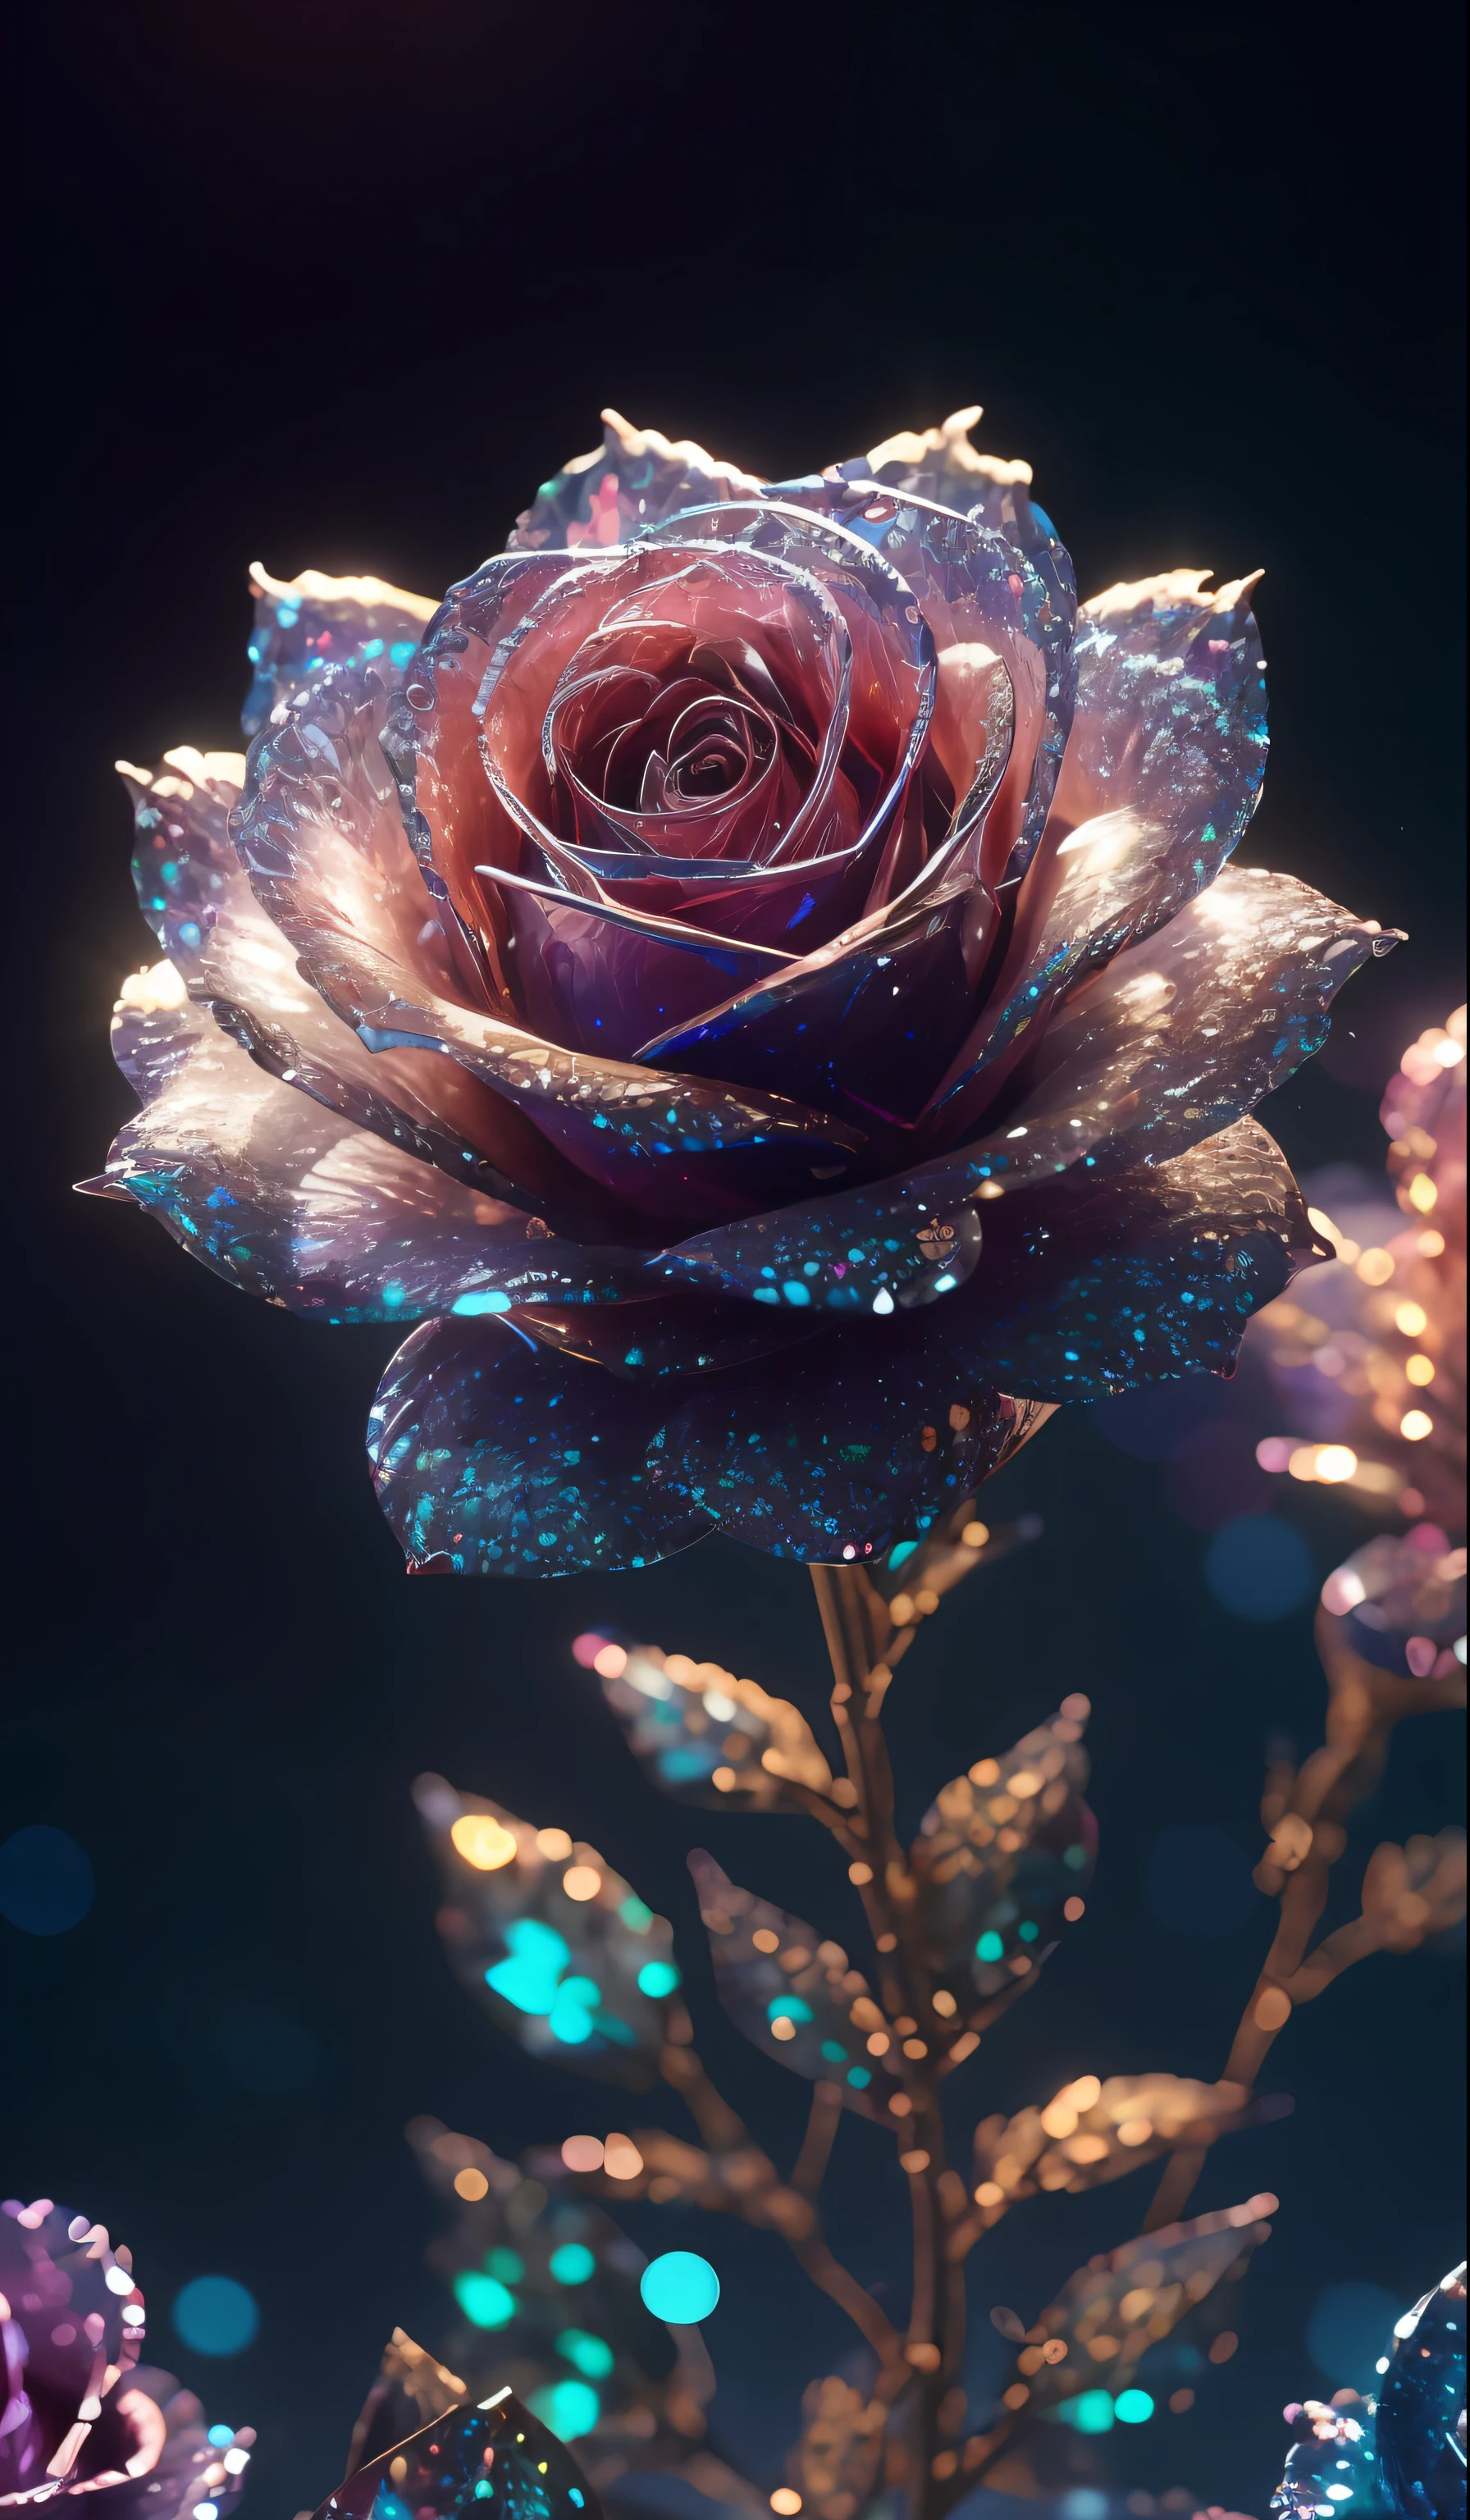 Rosa Cristal， fantasioso, galáxias, limpeza, brilhante, brilhante, esplendor, colorida, fotografia incrível, iluminação dramática, foto-realismo, ultra-detalhado, 4K, profundidade de campos, Uma alta resolução